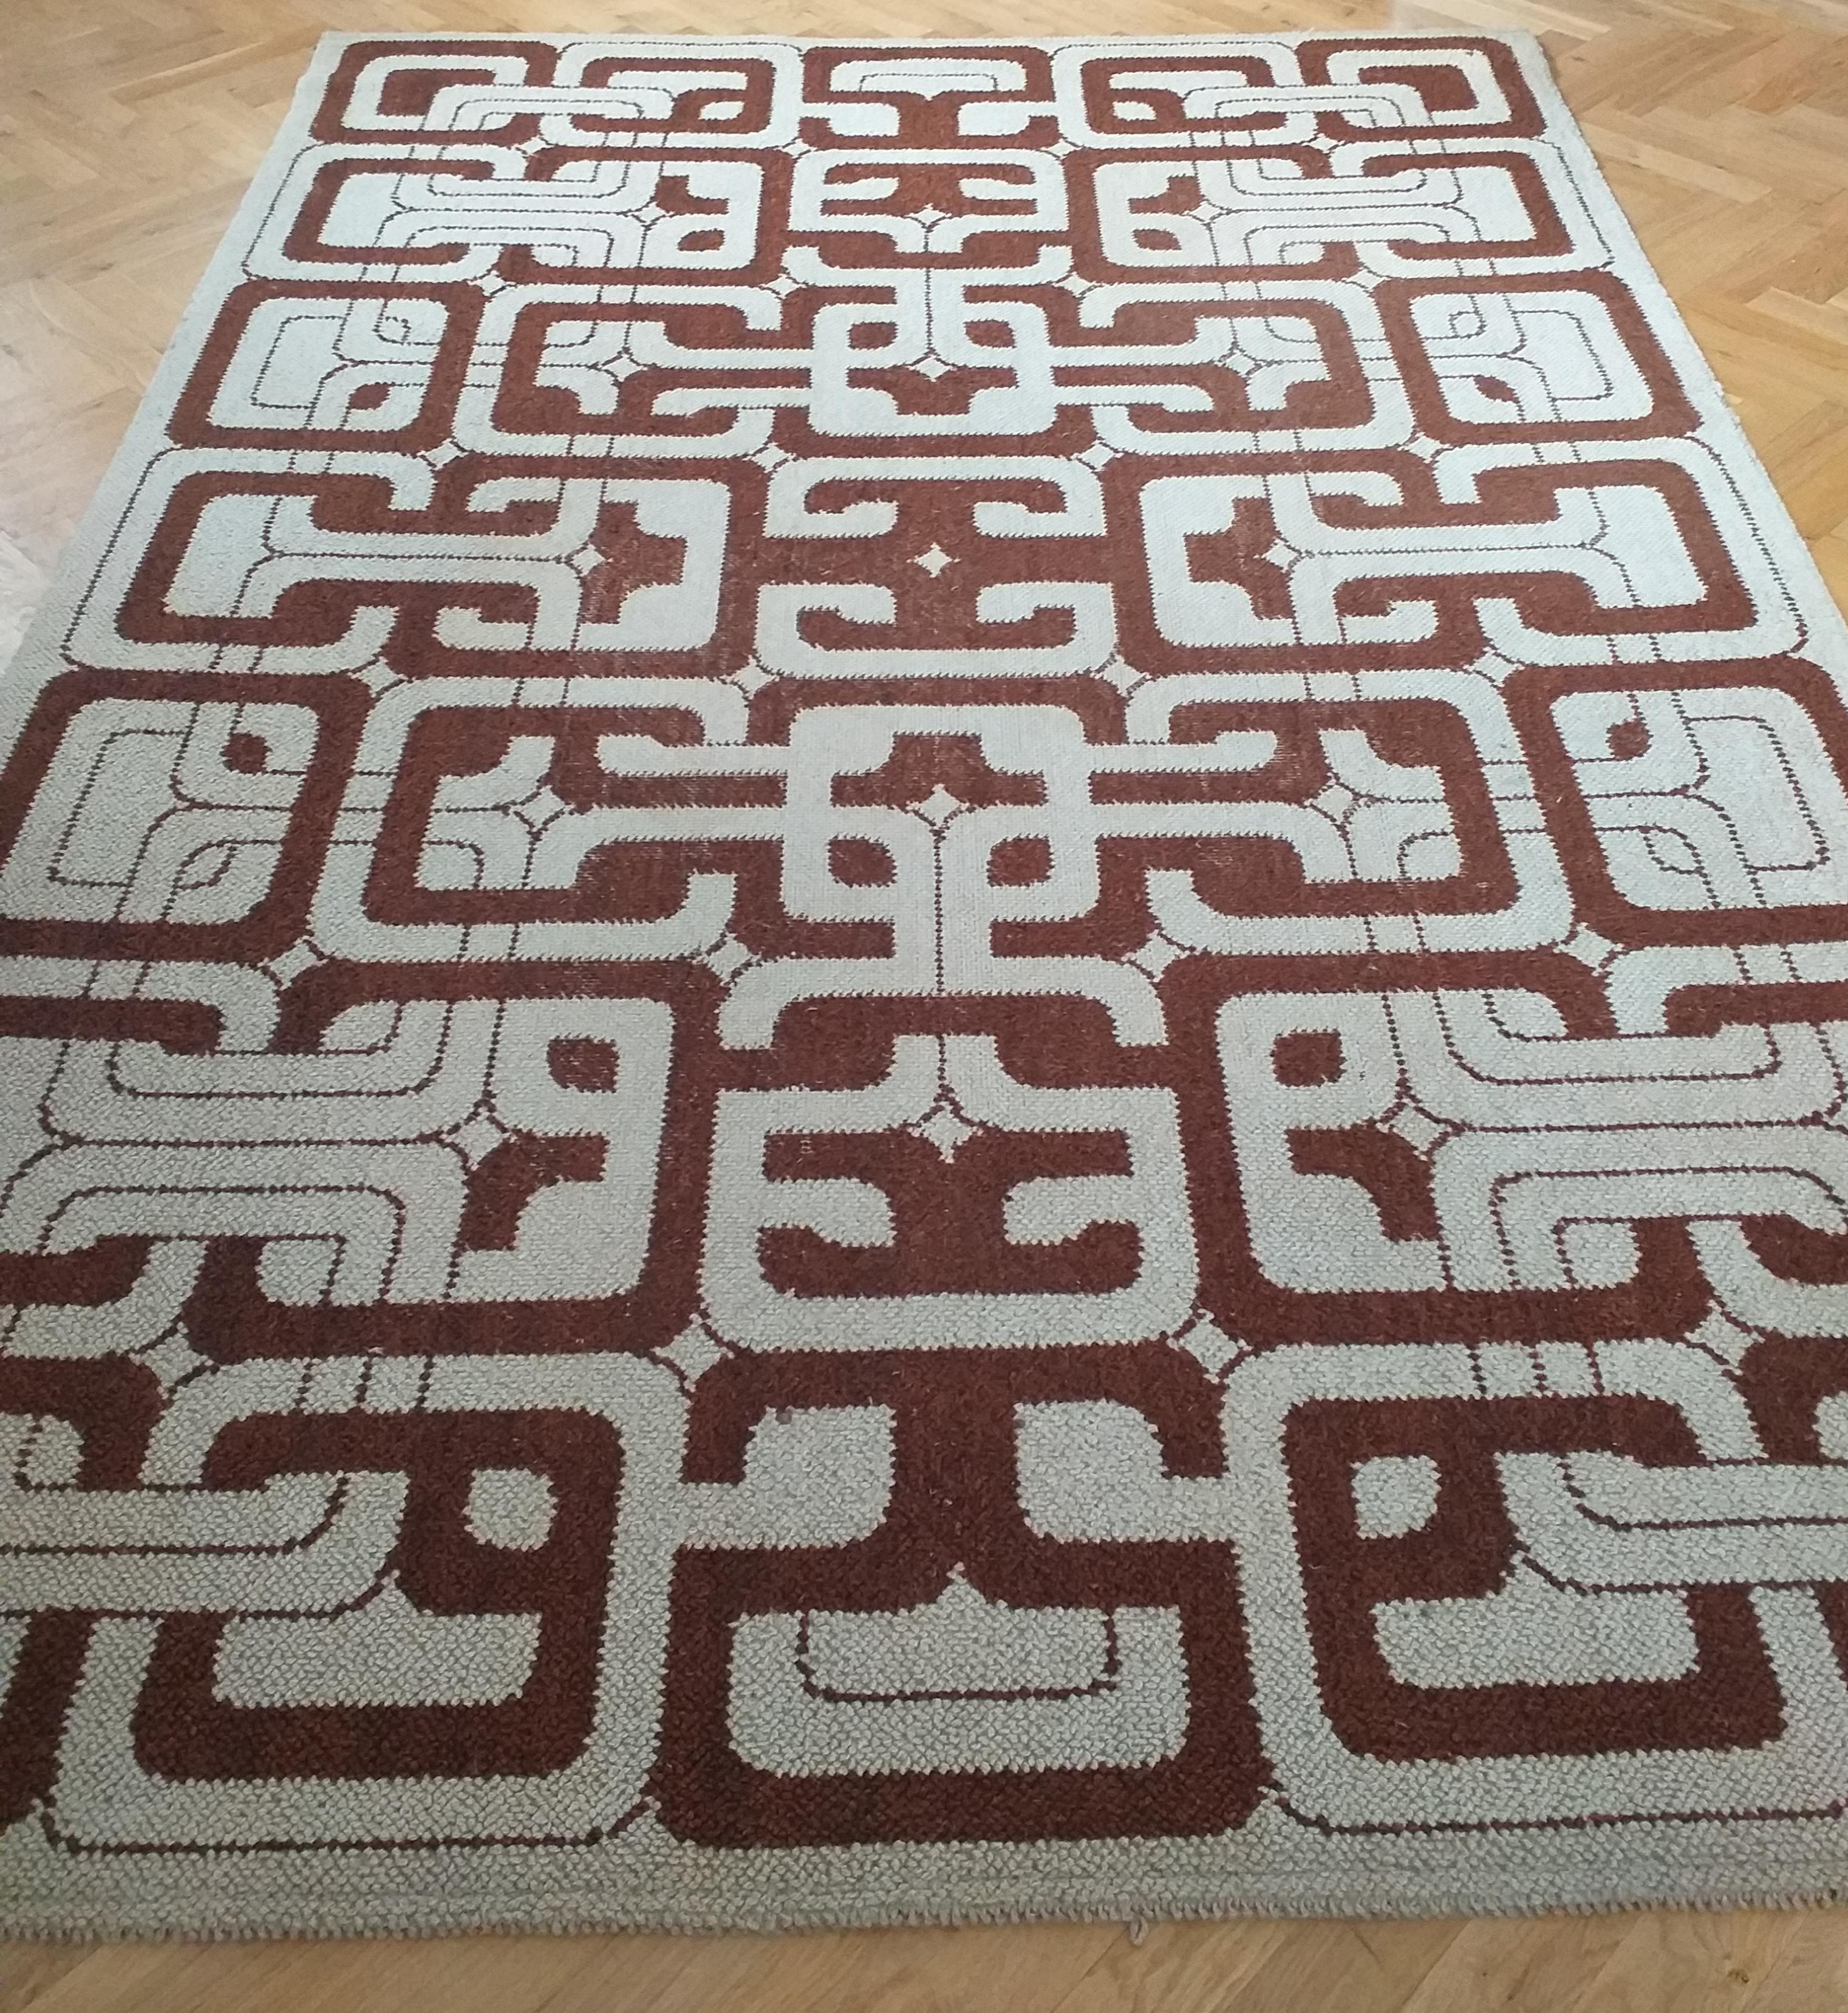 Wool Midcentury Geometric Rug / Carpet in Ege Rya Style, Denmark, 1960s